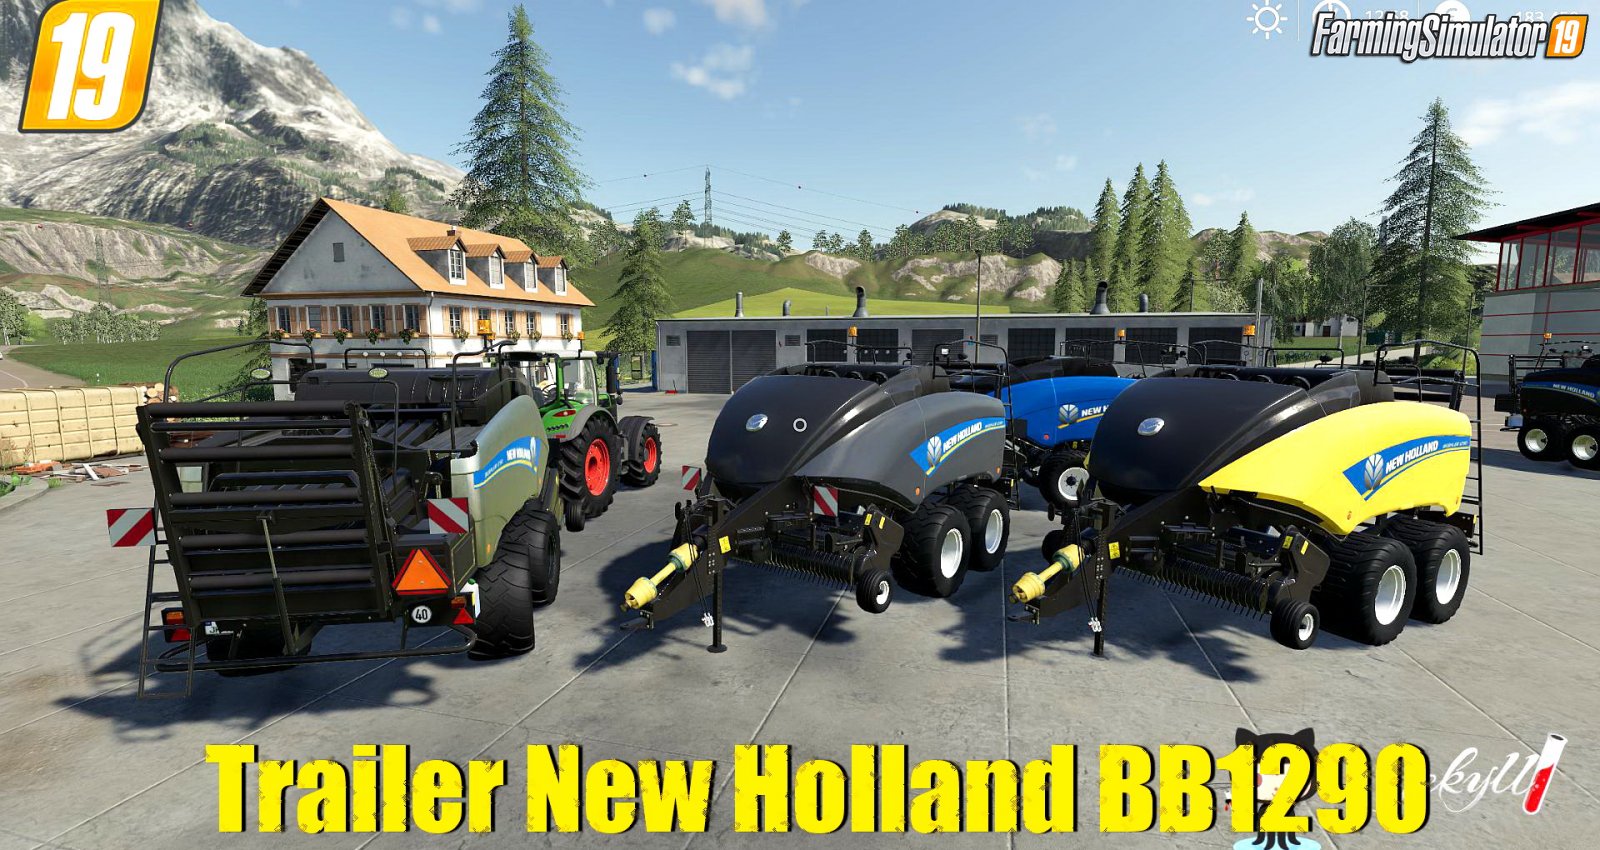 Trailer New Holland BB1290 v1.0 for FS19